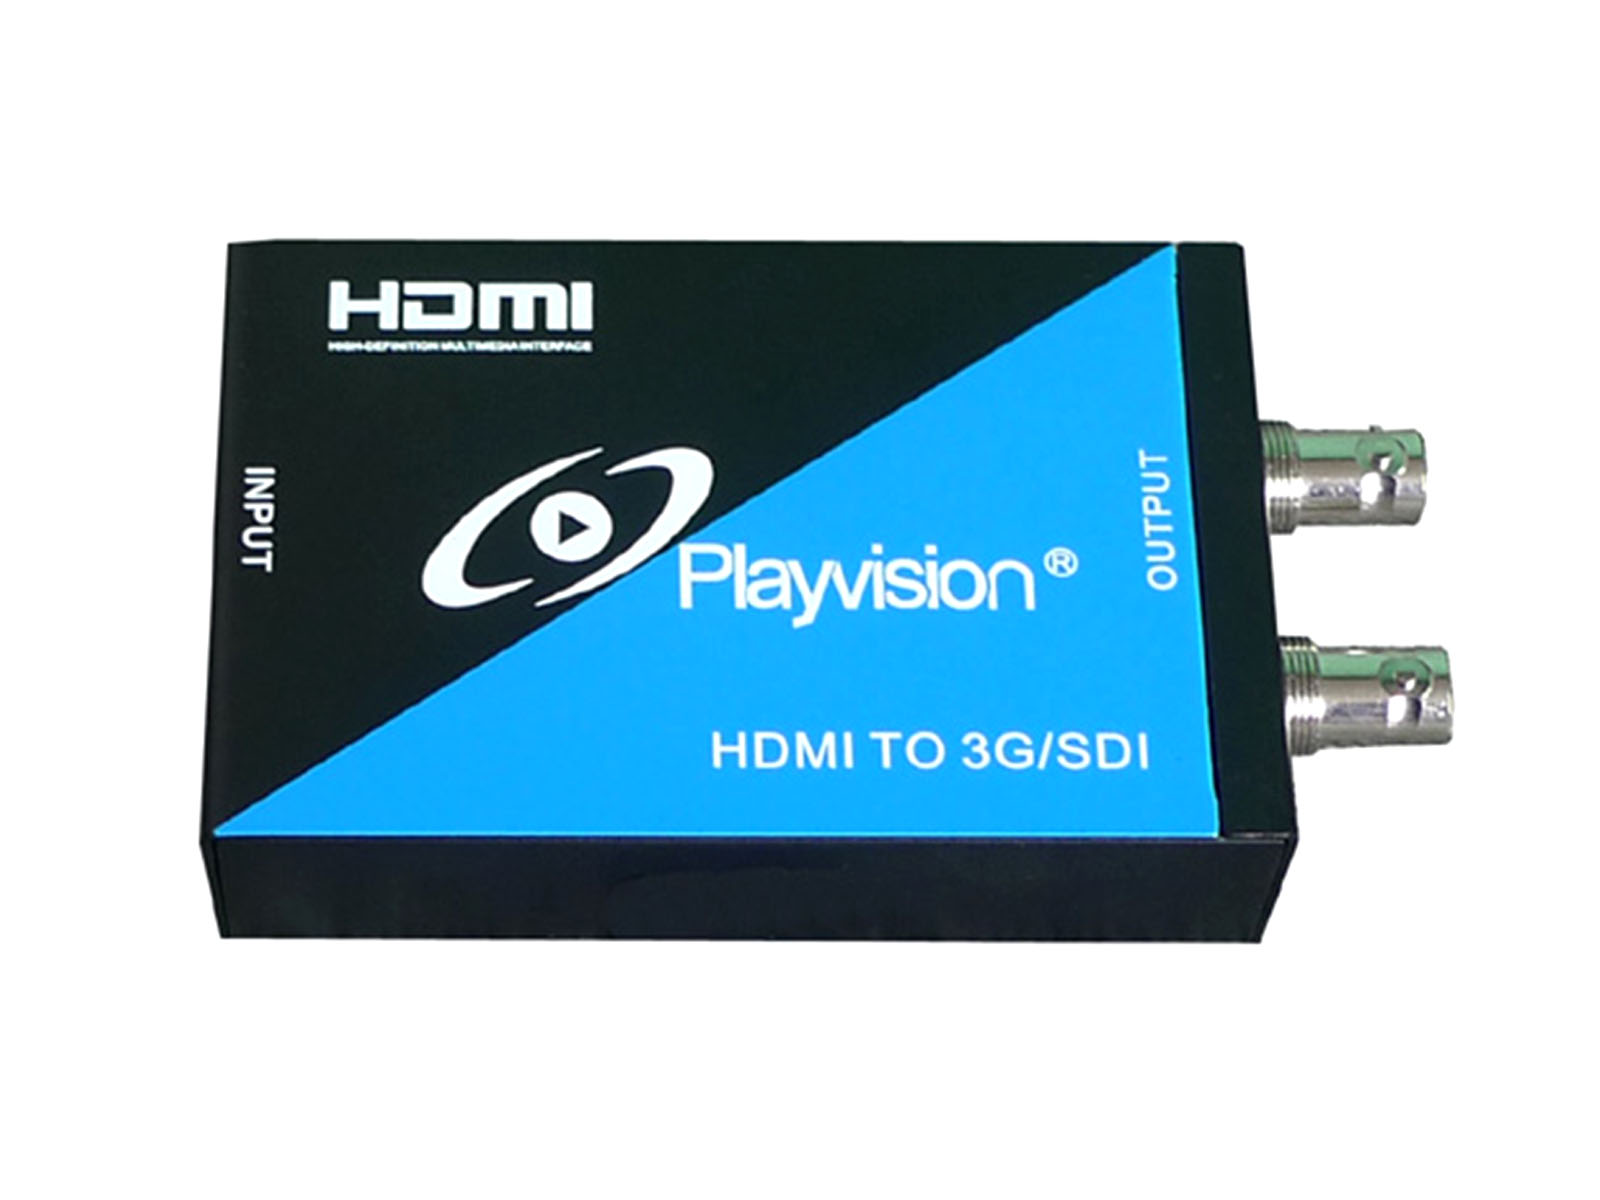 HDMI to 3G SDI